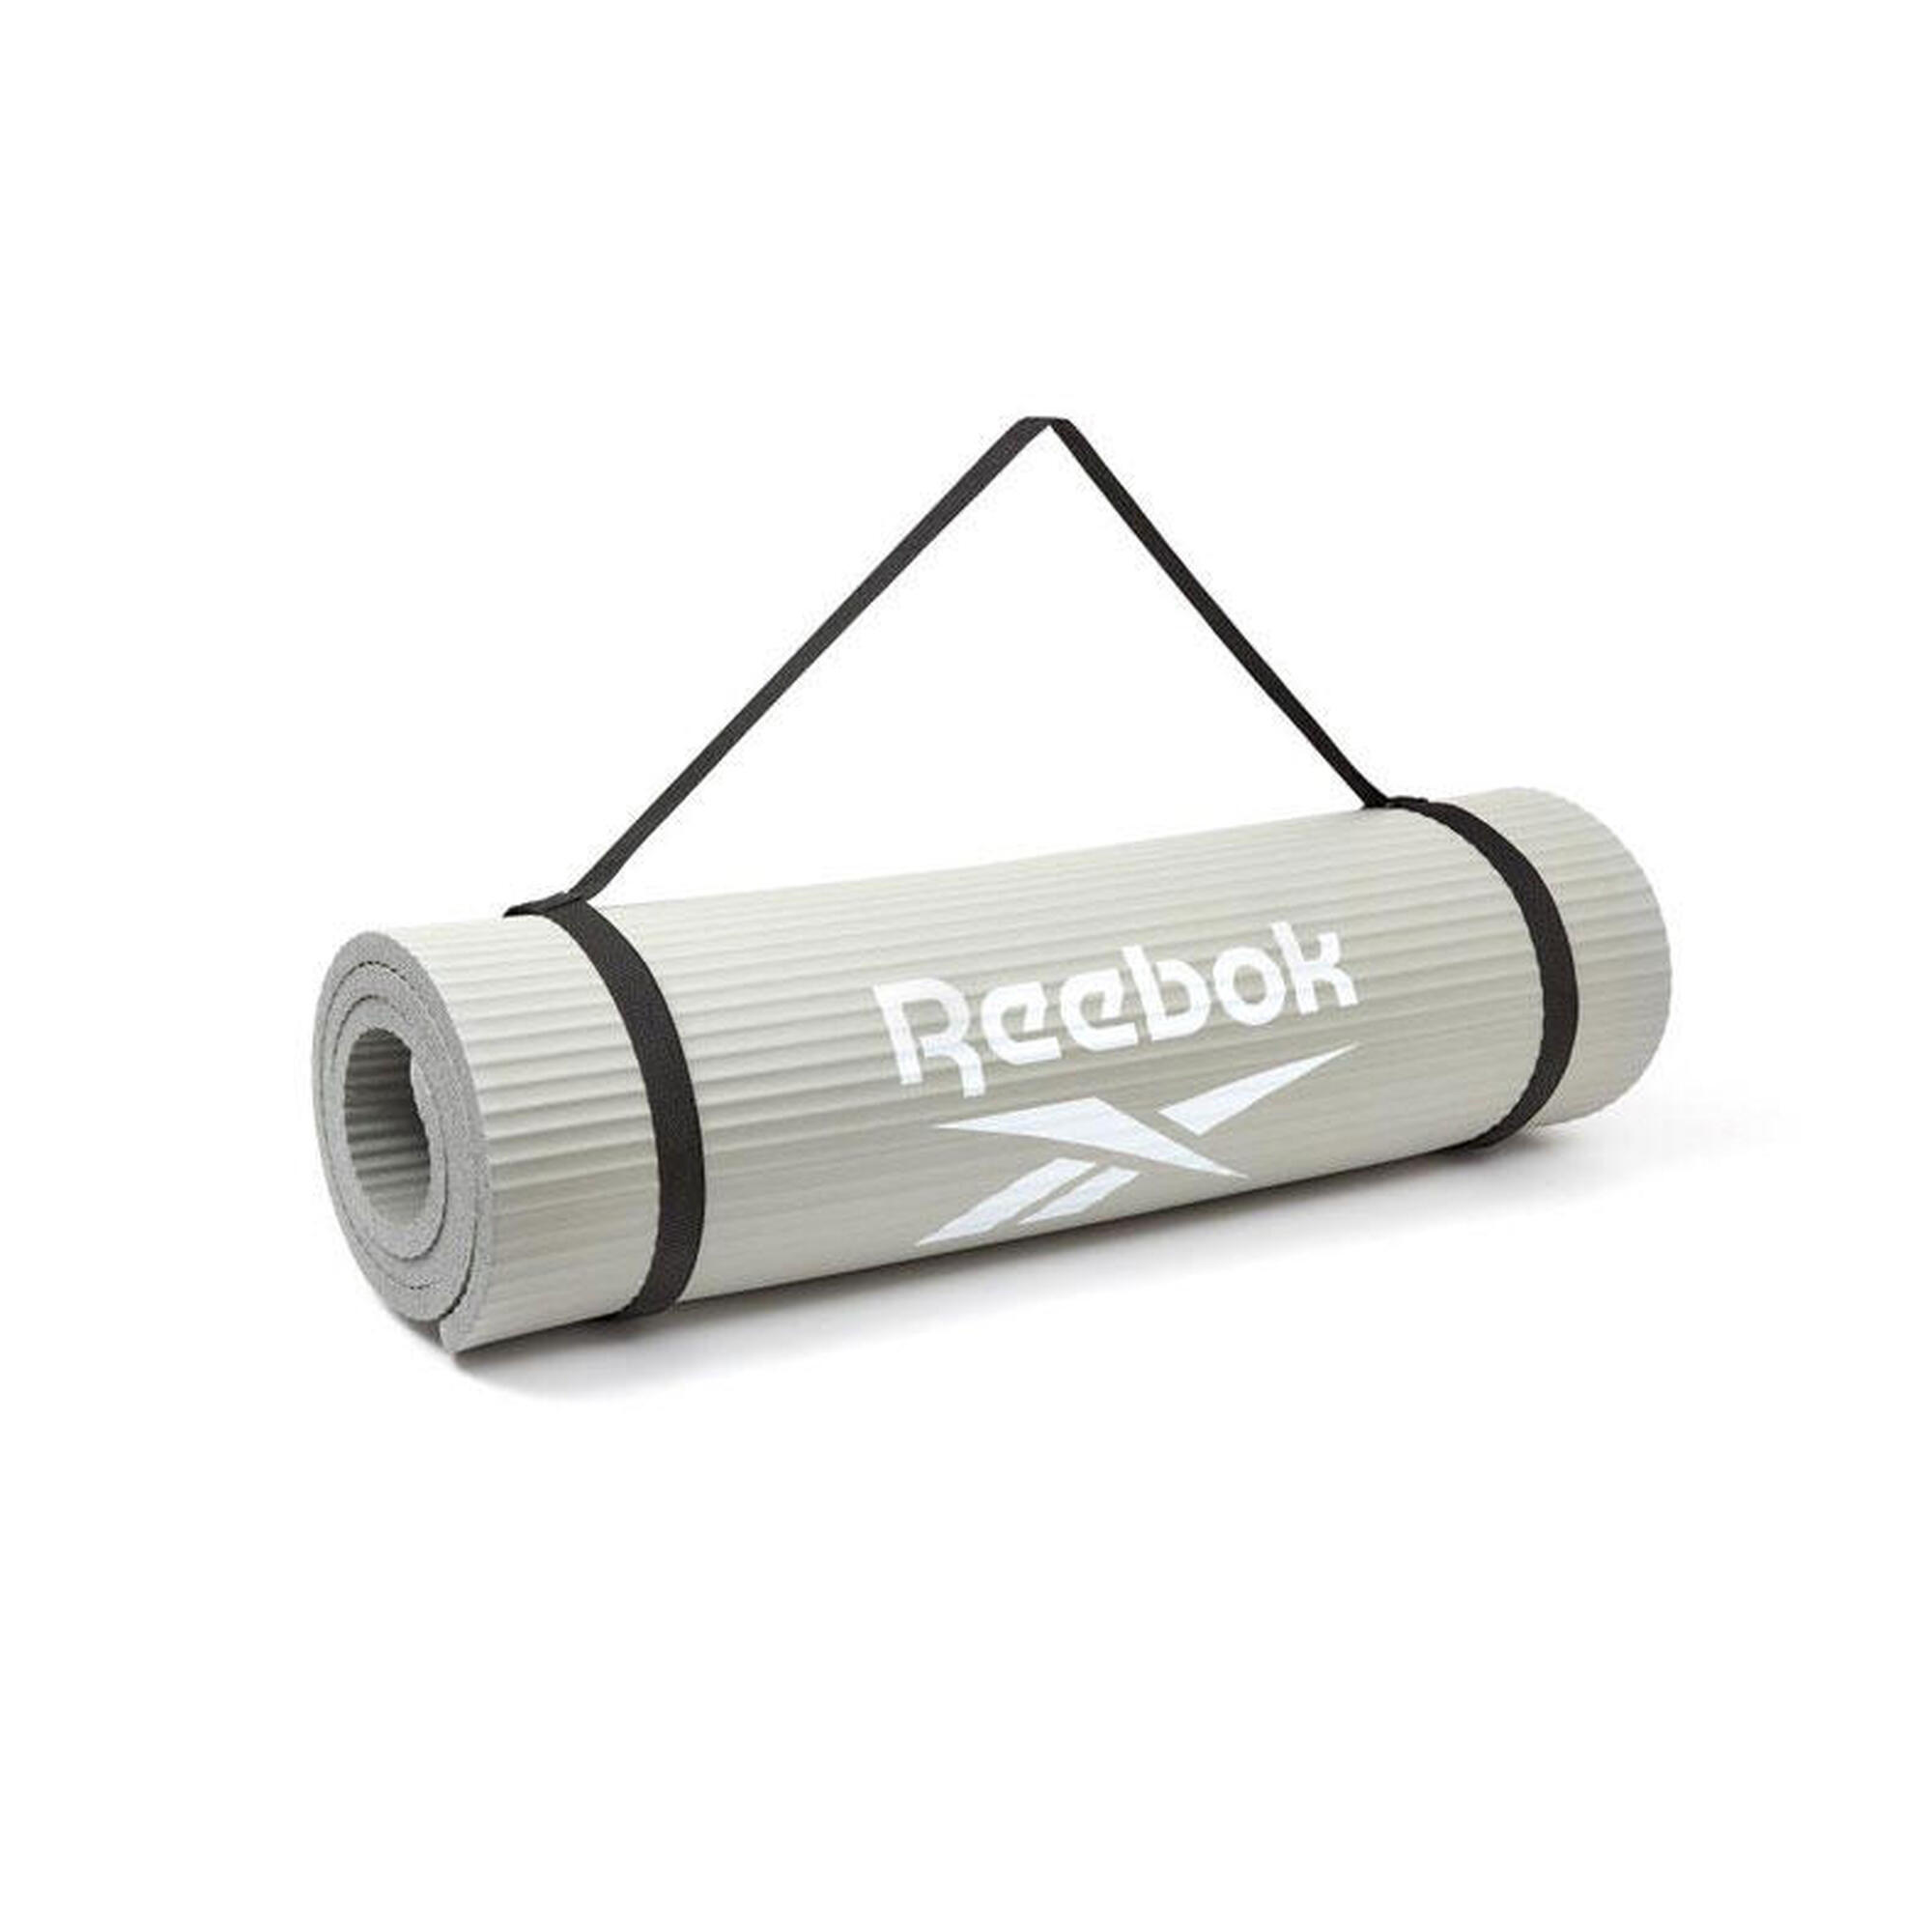 Tappetino di allenamento Reebok - 15mm - Grigio